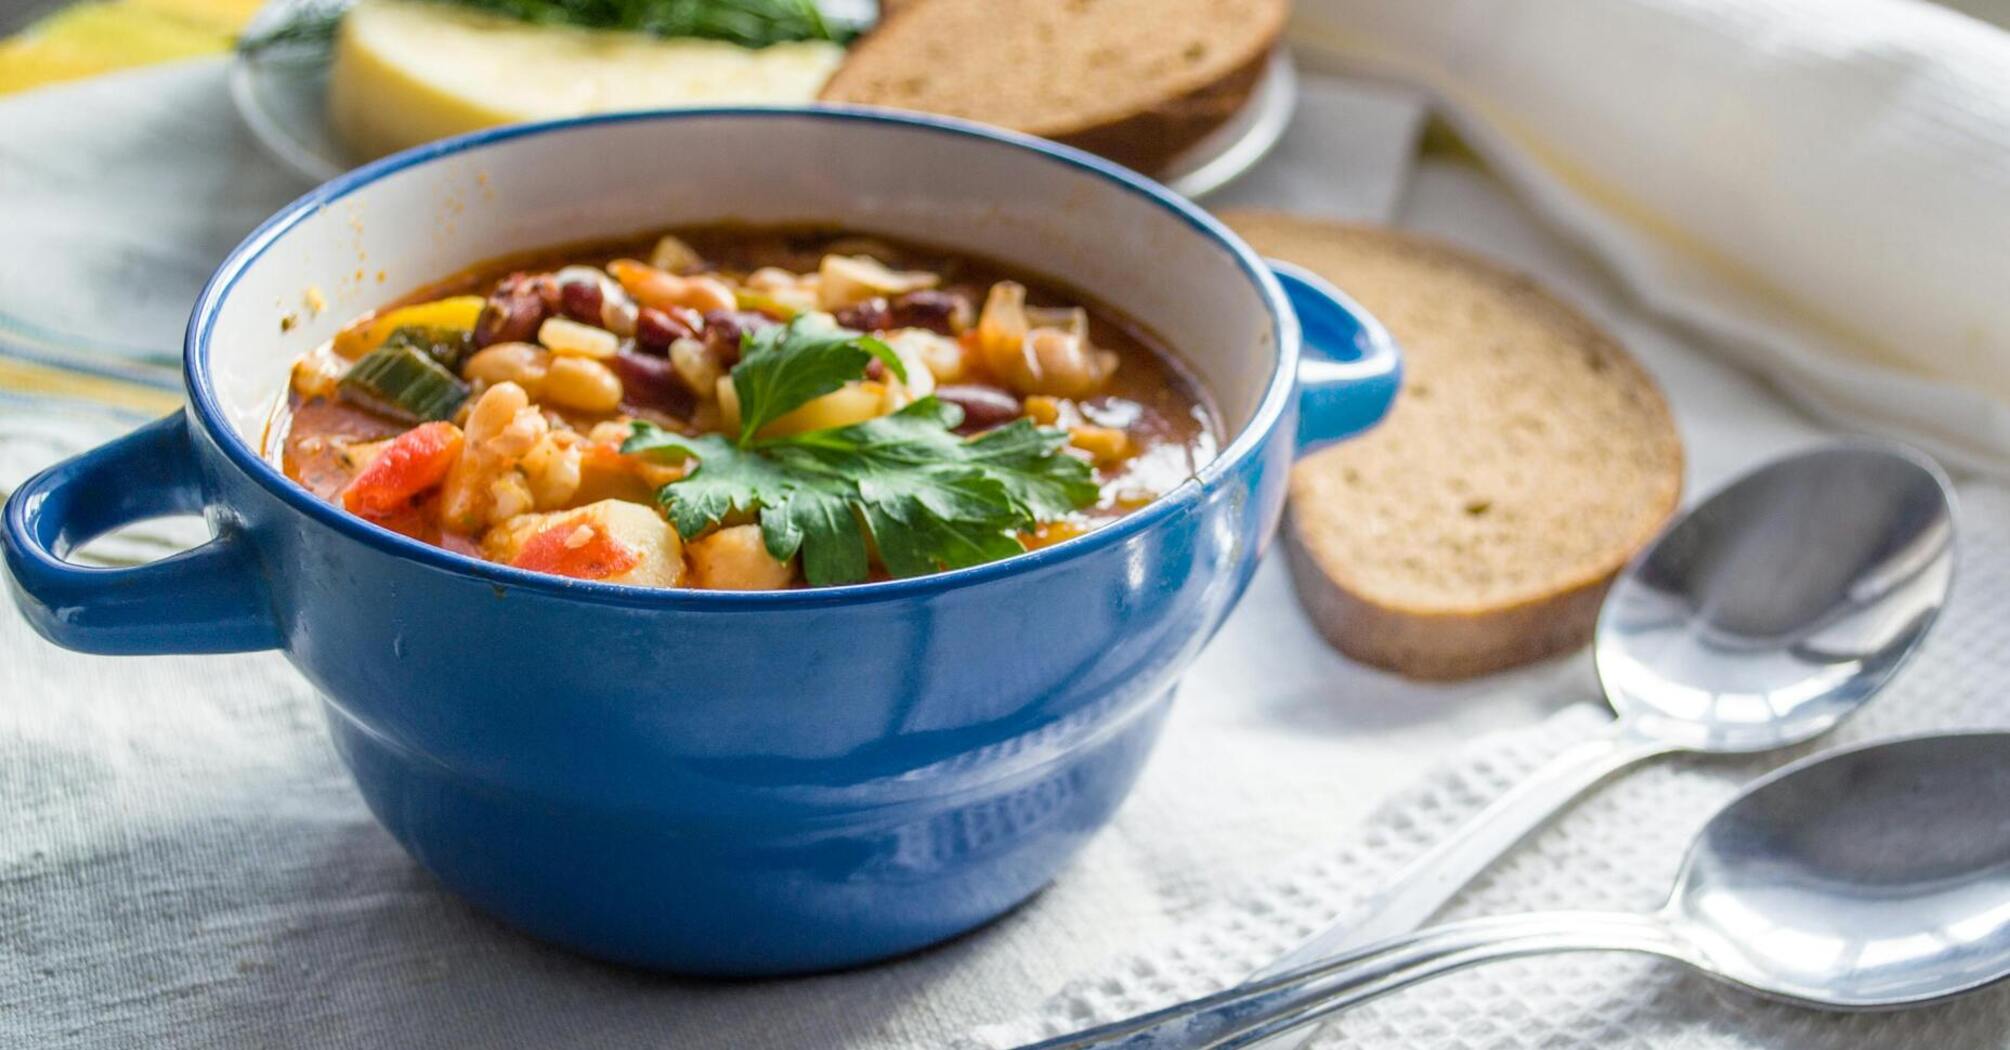 Действительно ли нужно есть суп каждый день: эксперты опровергают мифы